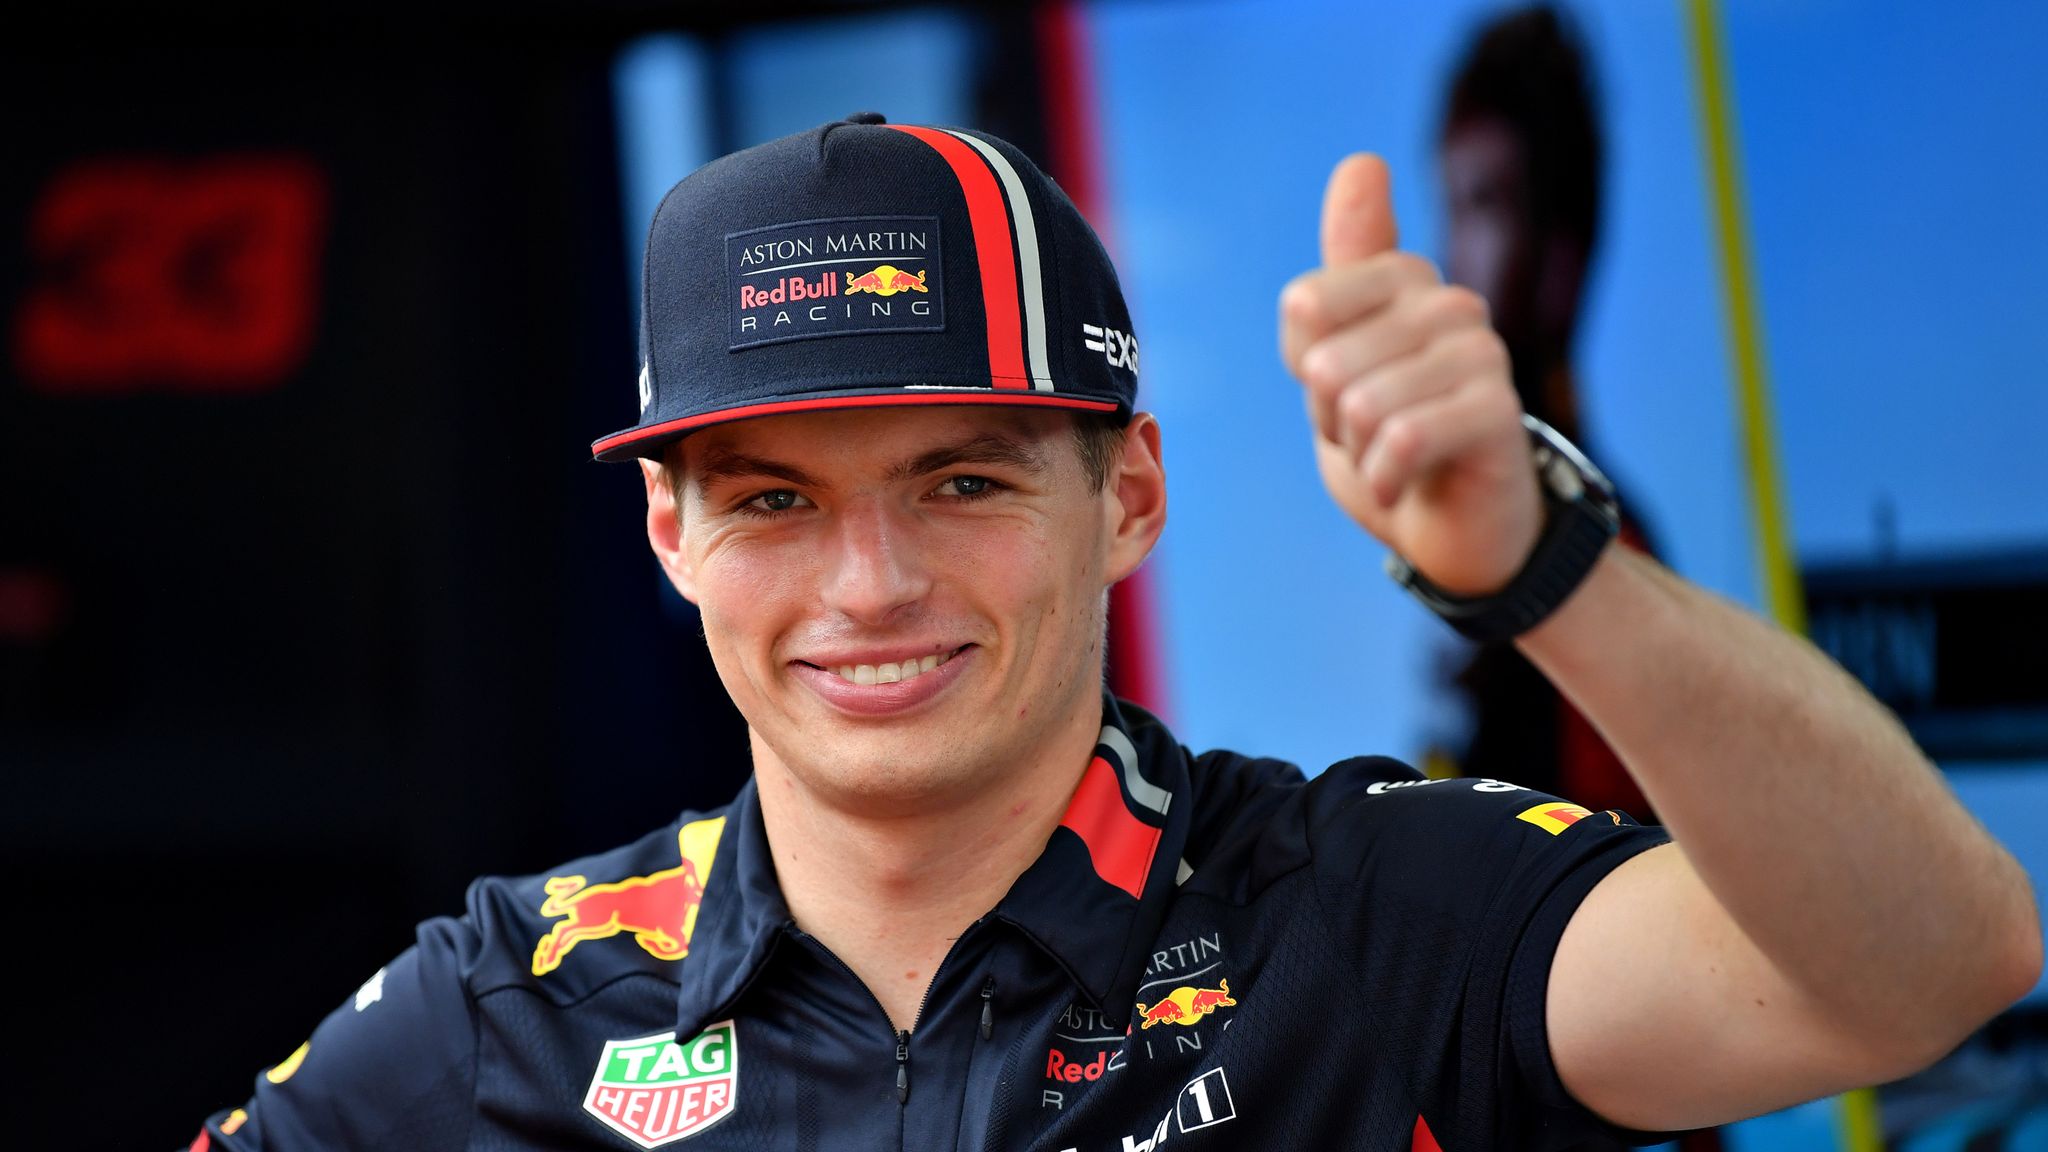 Intuïtie Origineel Overweldigen Max Verstappen looking set for F1 2020 at Red Bull | F1 News